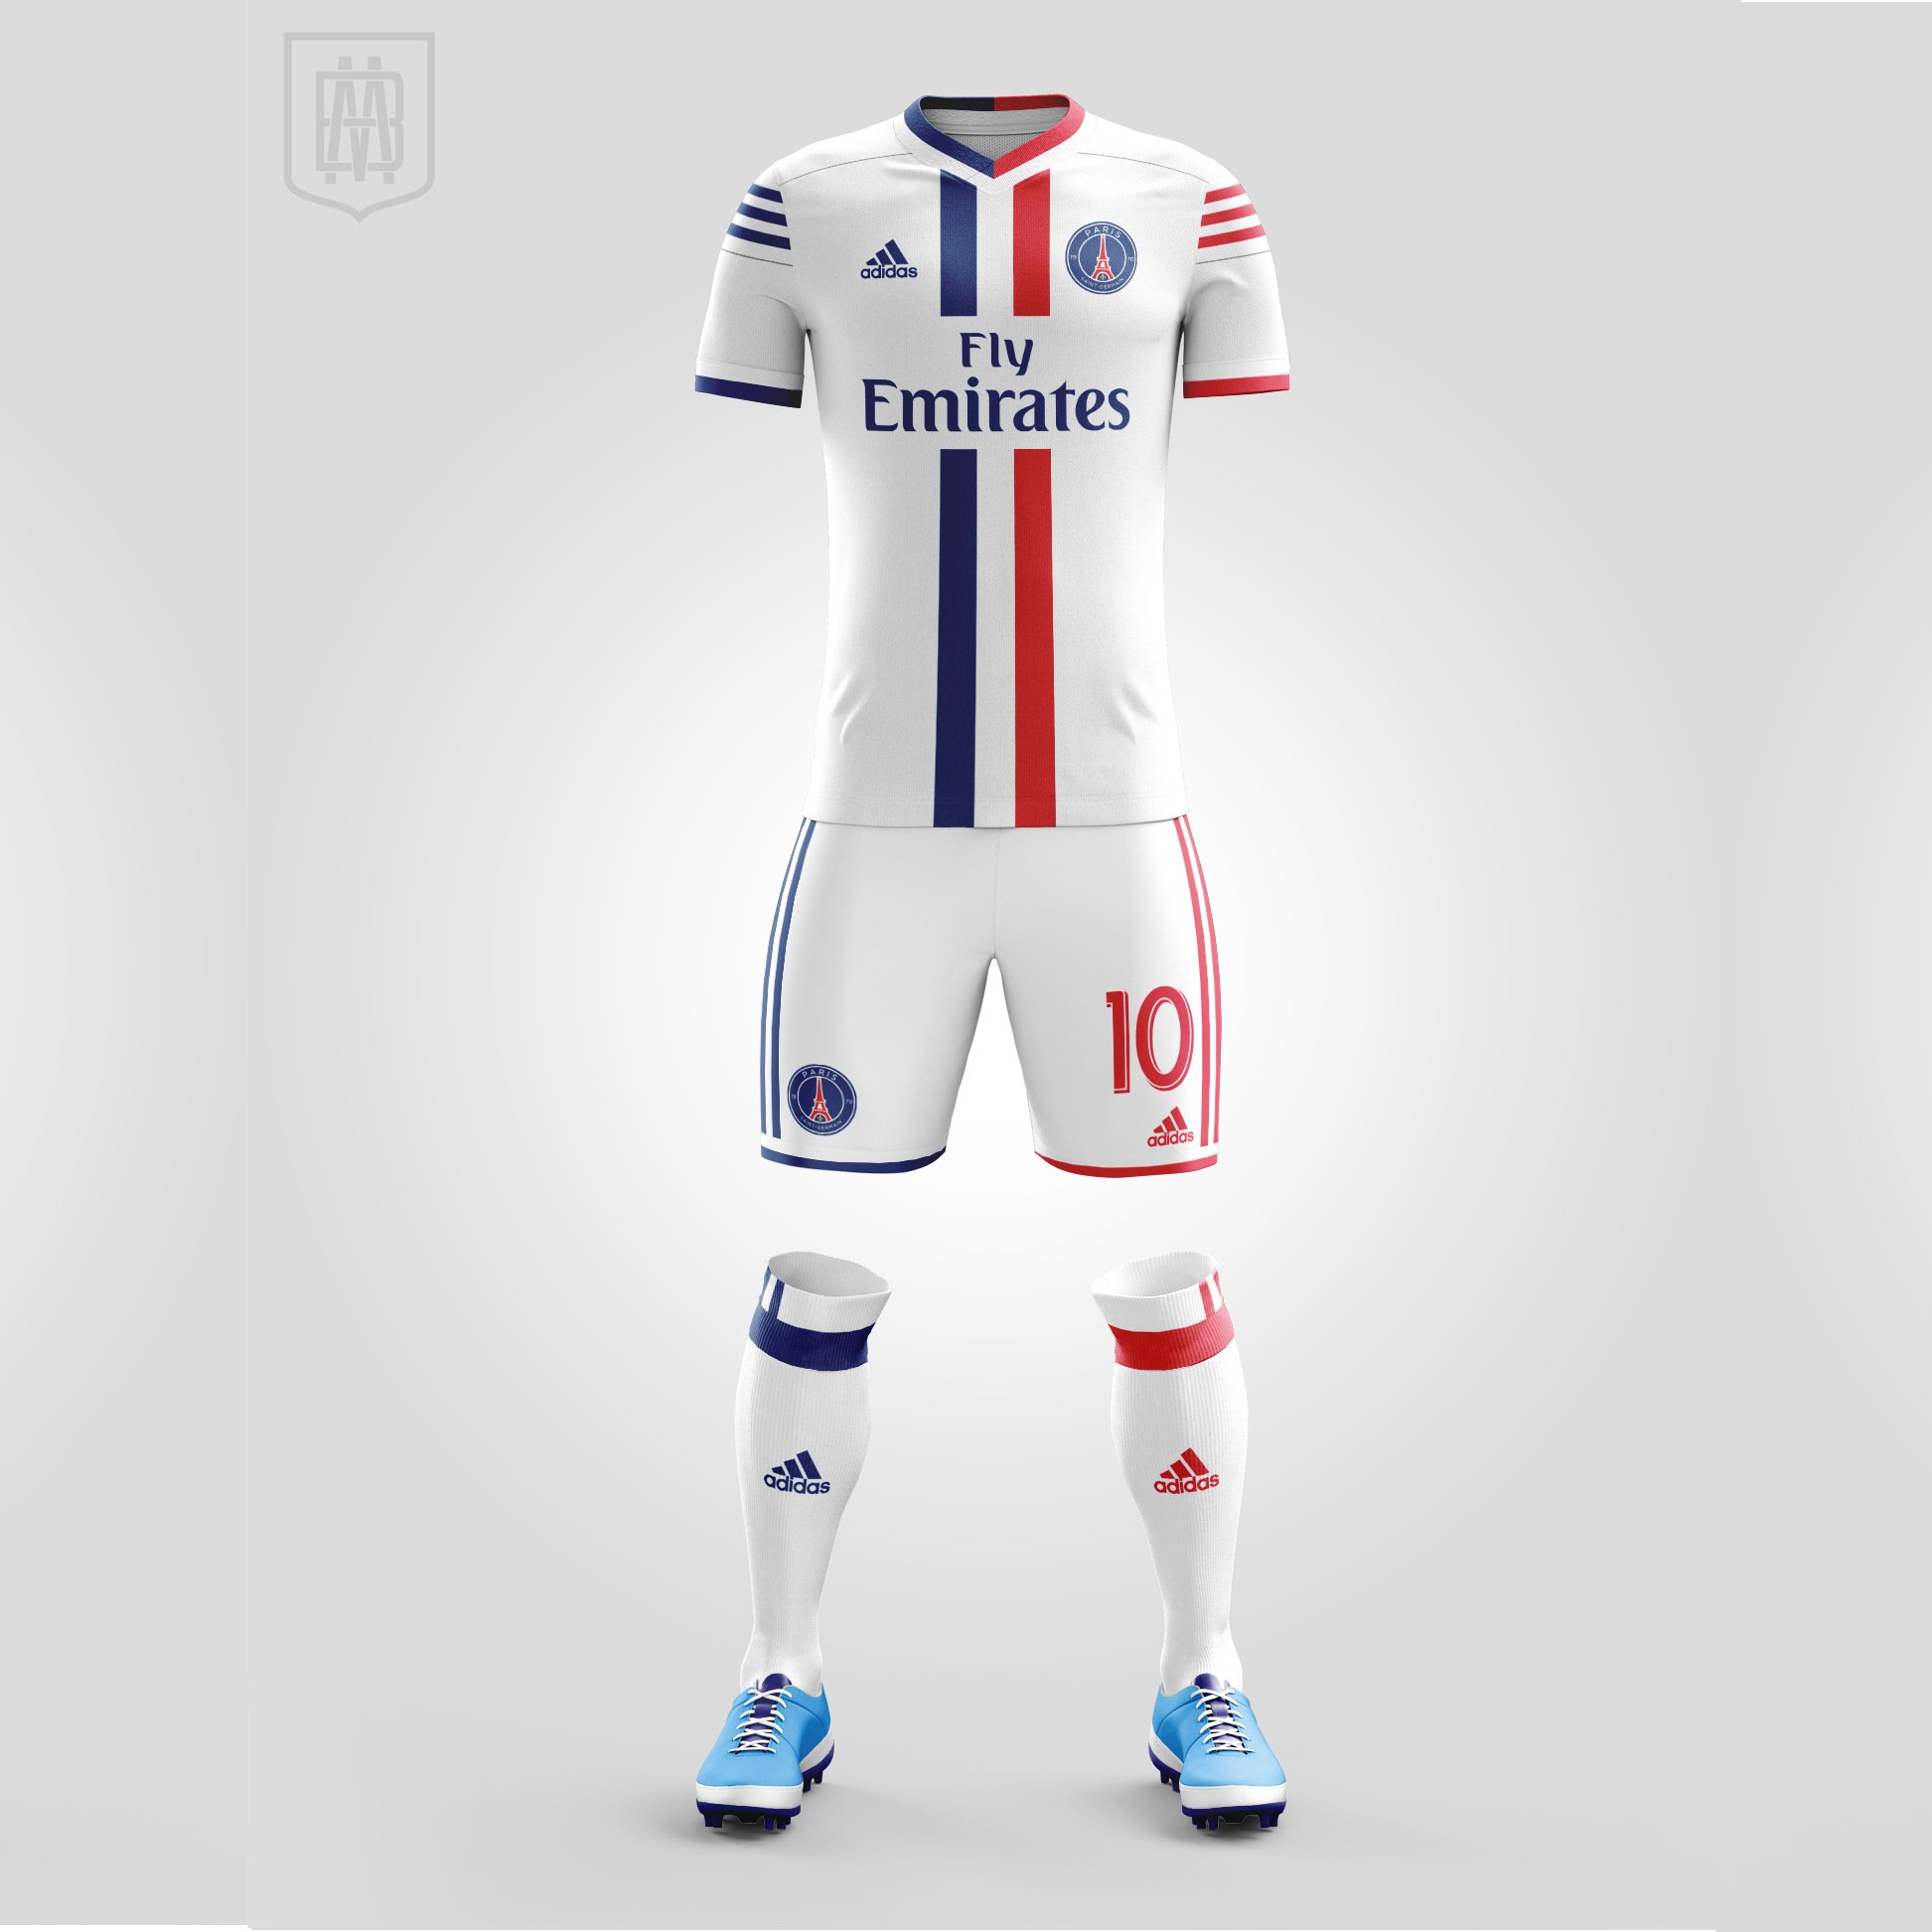 FootballShirtCulture.com on Twitter: "Paris Saint-Germain Away Kit by xMemoBB See details @designfootball https://t.co/hBJSBy4XiX #ParisSaintGermain #teampsg #kitdesign https://t.co/ZVCp6qJer8" / Twitter